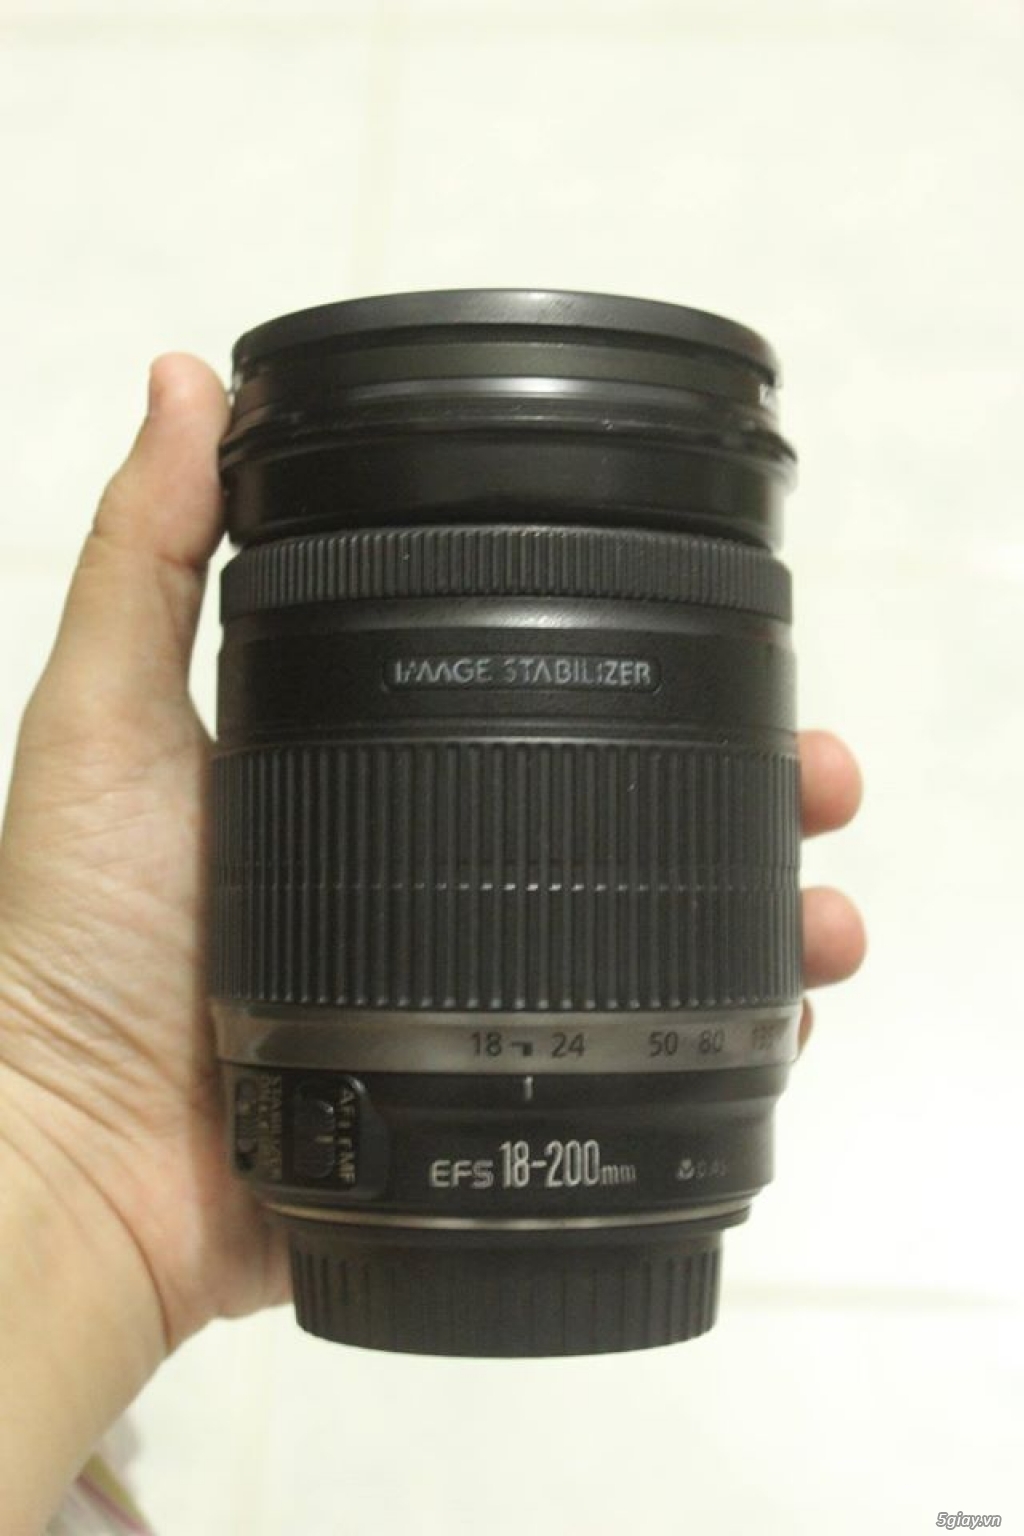 Canon 40D (80k shot) - Canon 50 1.8 II - Canon 18 - 200 IS - Flash YN 560 II - 8